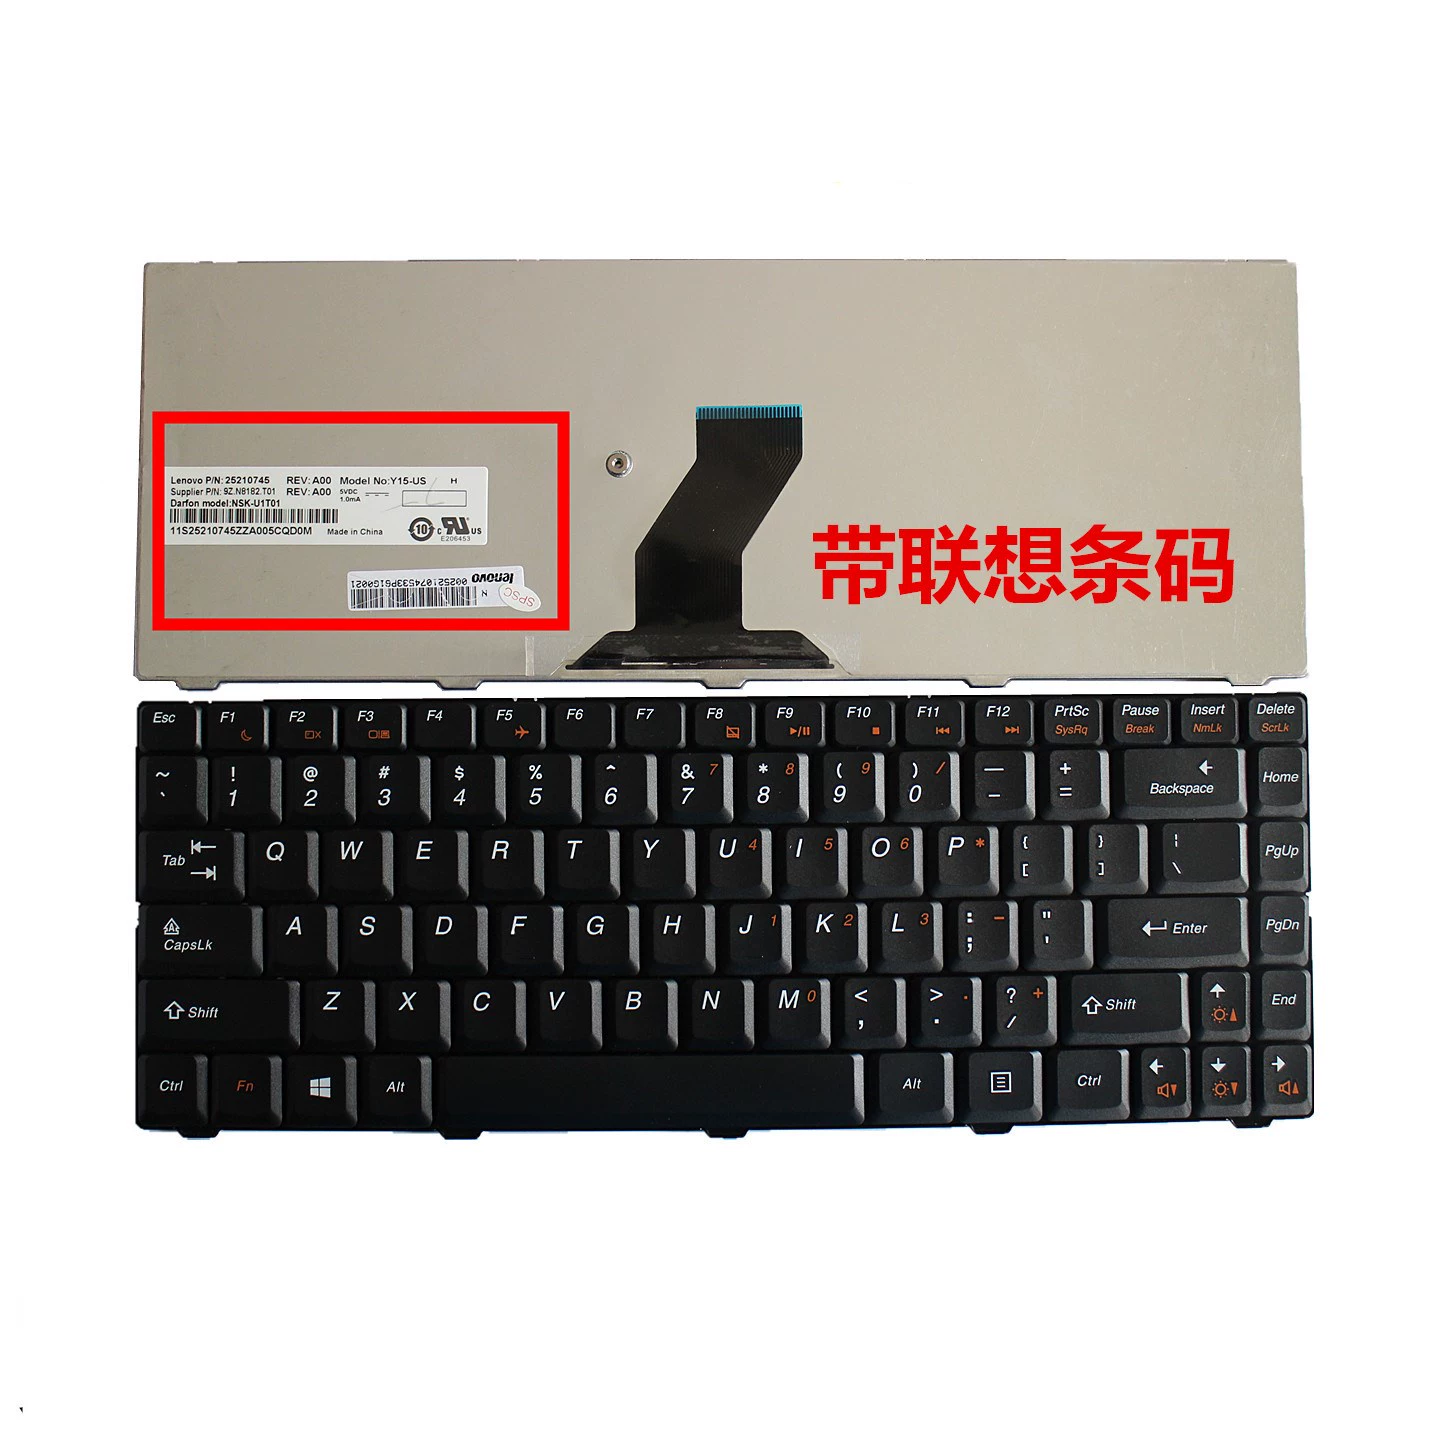 联想b465c linux安装键盘_联想键盘安装键帽示意图_联想键盘安装